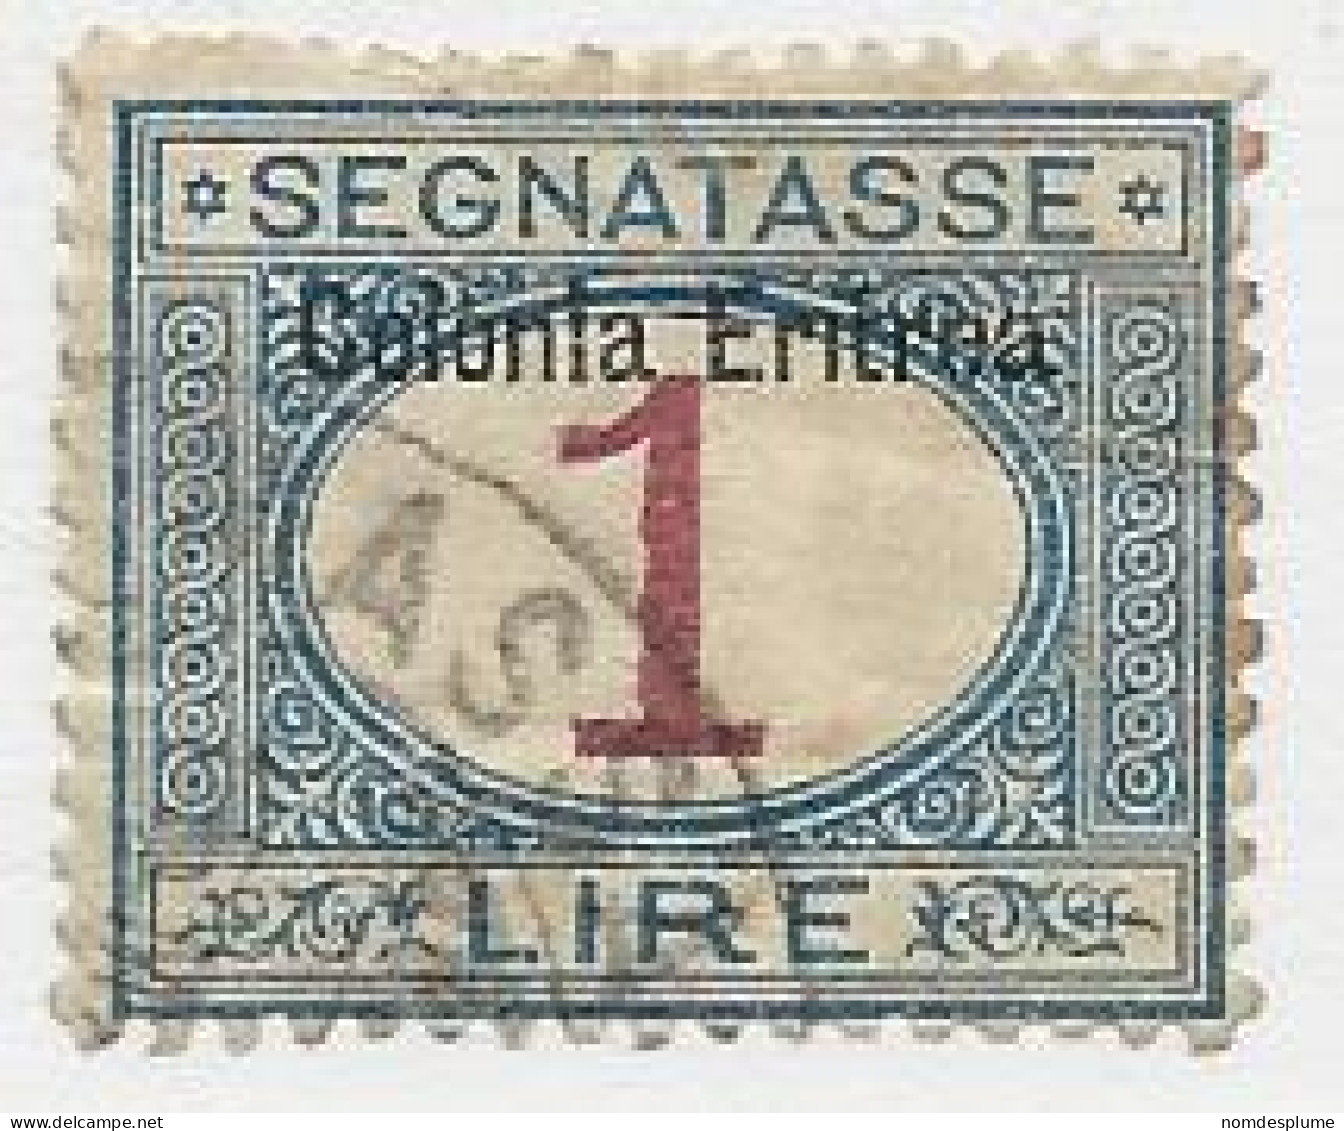 23901 ) Eritrea 1903 Posage Due - Erythrée